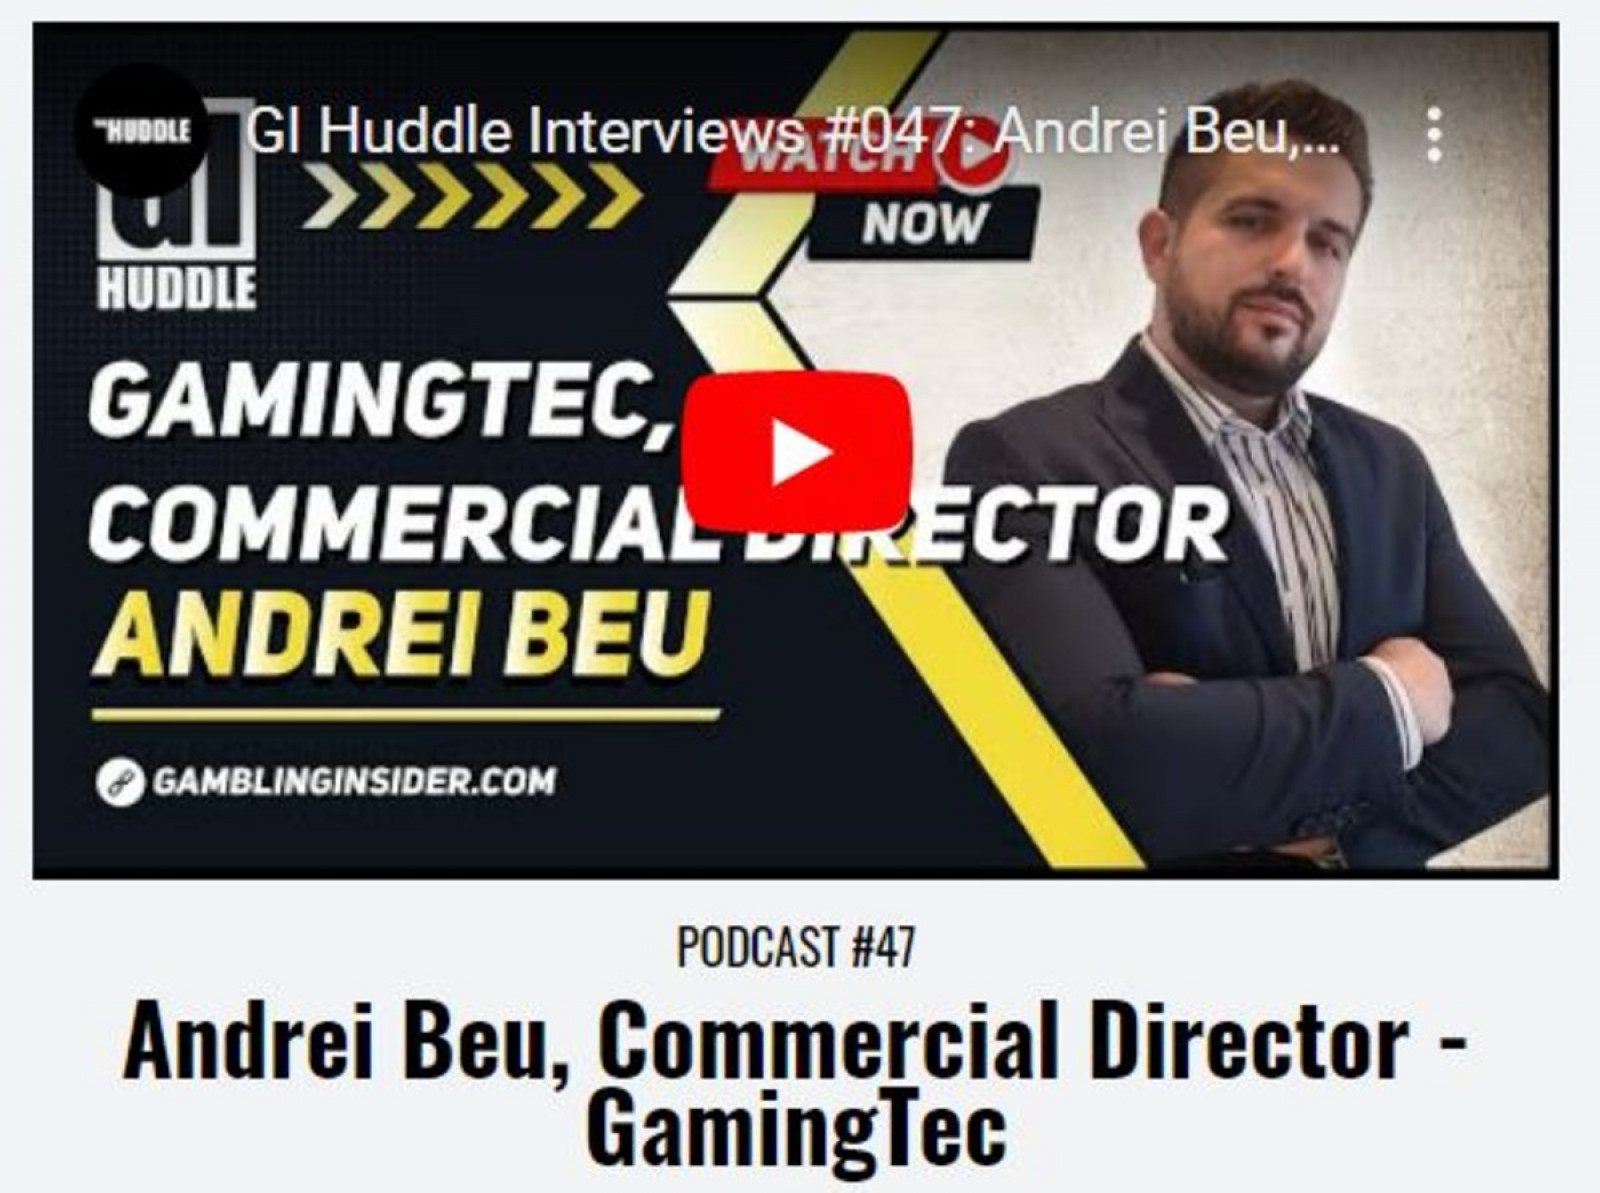 Andrei Beu for GI Huddle: Gamingtec in 2022